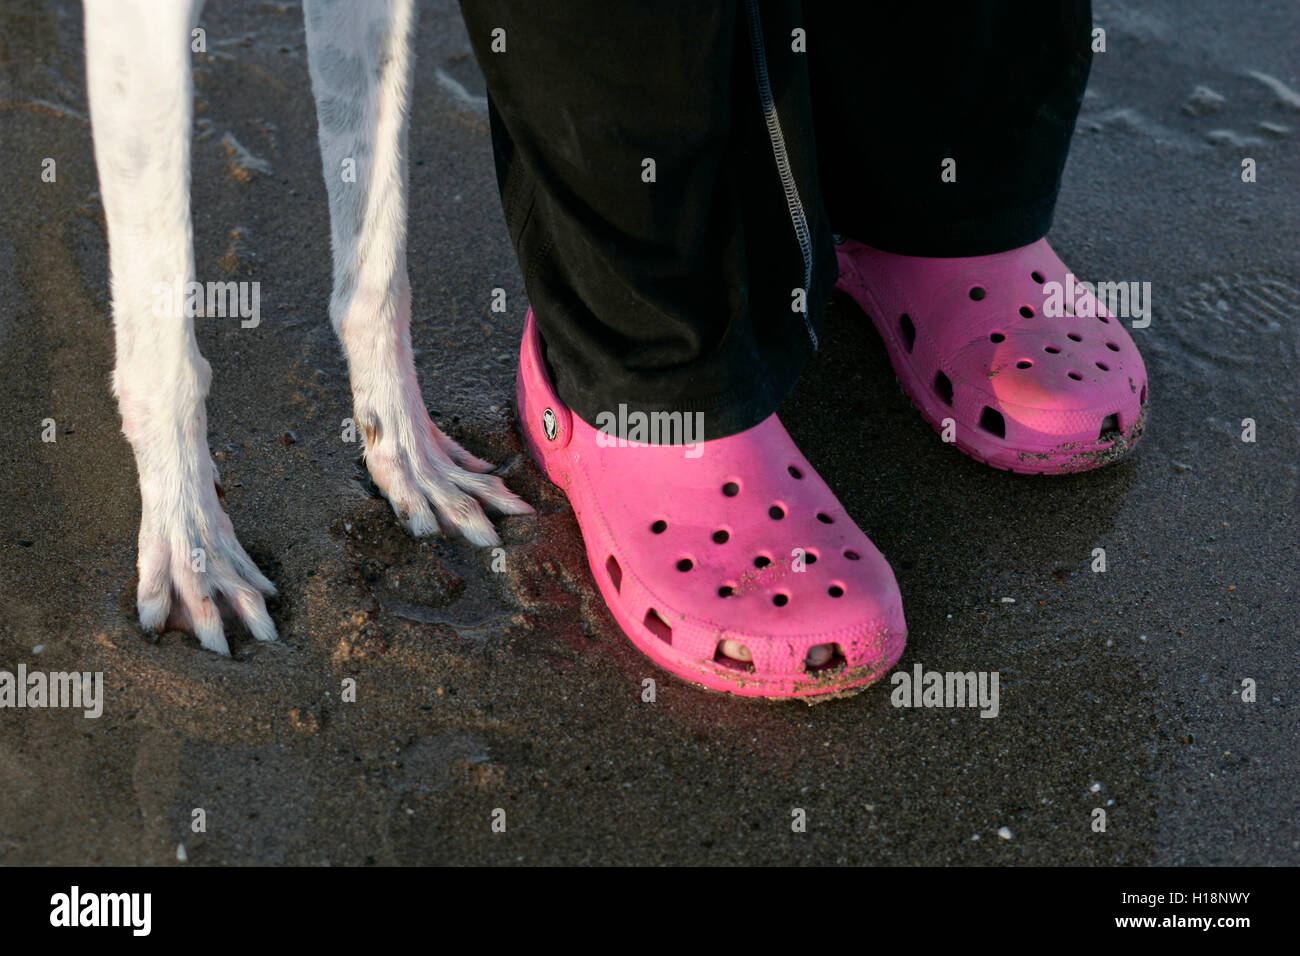 Zwei Paar Füße eines Menschen einen Hund, Mensch trägt rosa Schuhe, der Hund hat weiße Pfoten. Stockfoto